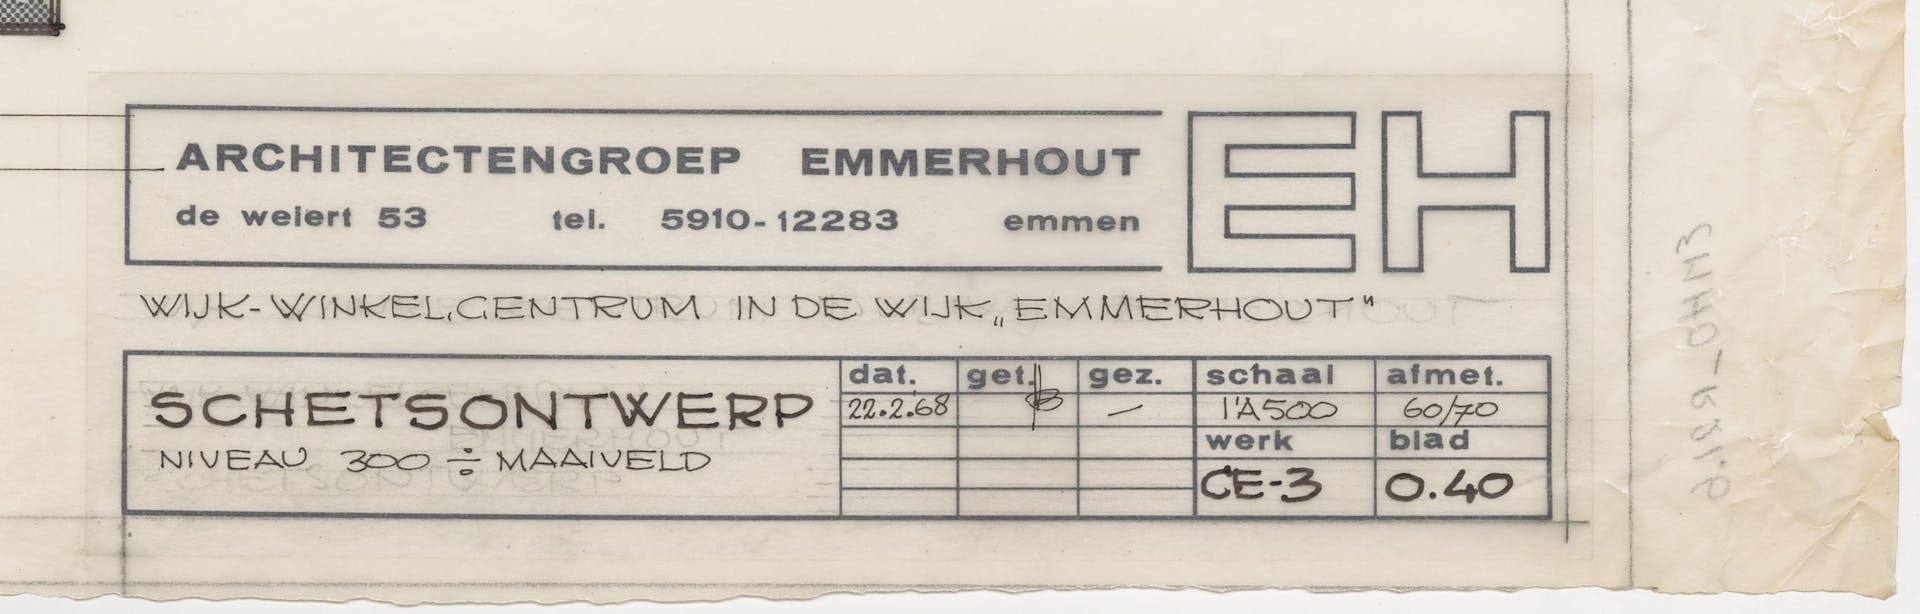 Architectengroep Emmerhout, schetsontwerp winkelcentrum, Emmerhout, 1968. Toepassing van een custom-made Zip met vaste gegevens, zoals naam, adres en logo van het architectenbureau. Op de Zip was ruimte om variabele gegevens als titel, fase en… 